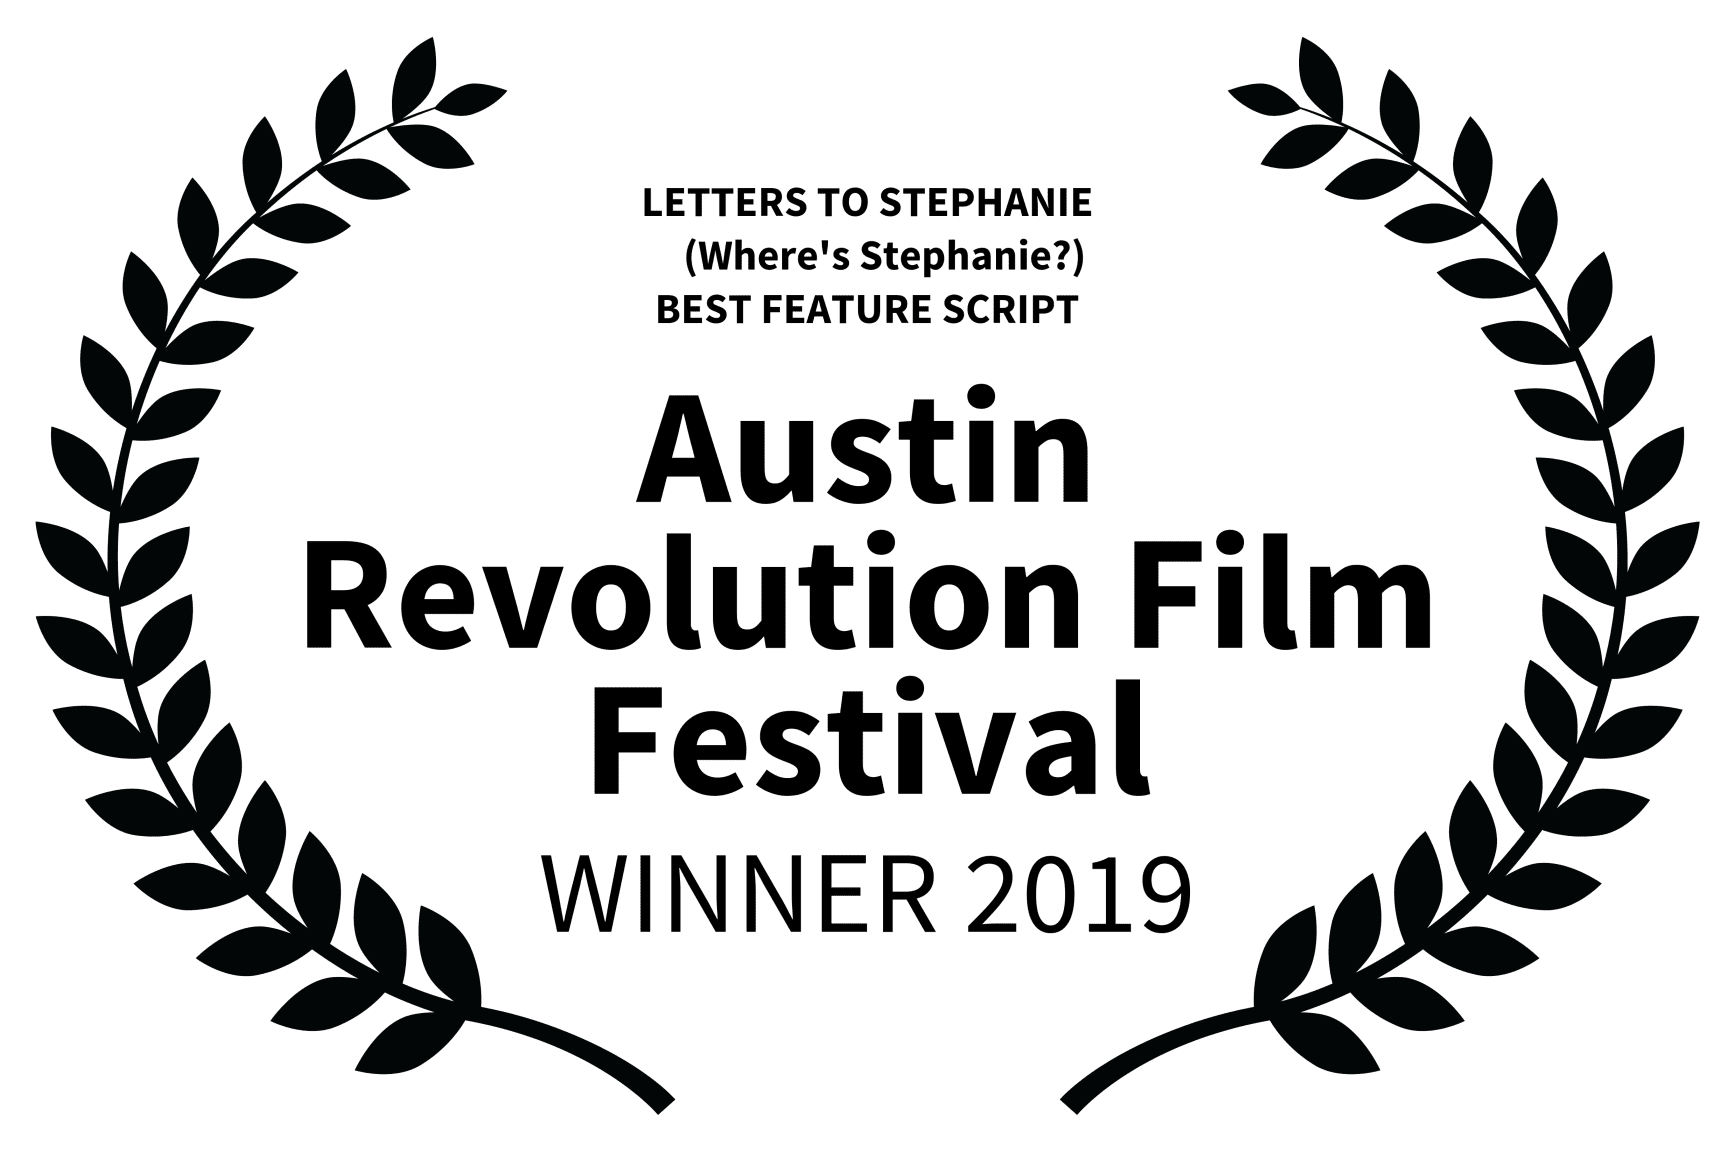 Austin Revolution Film Festival winner